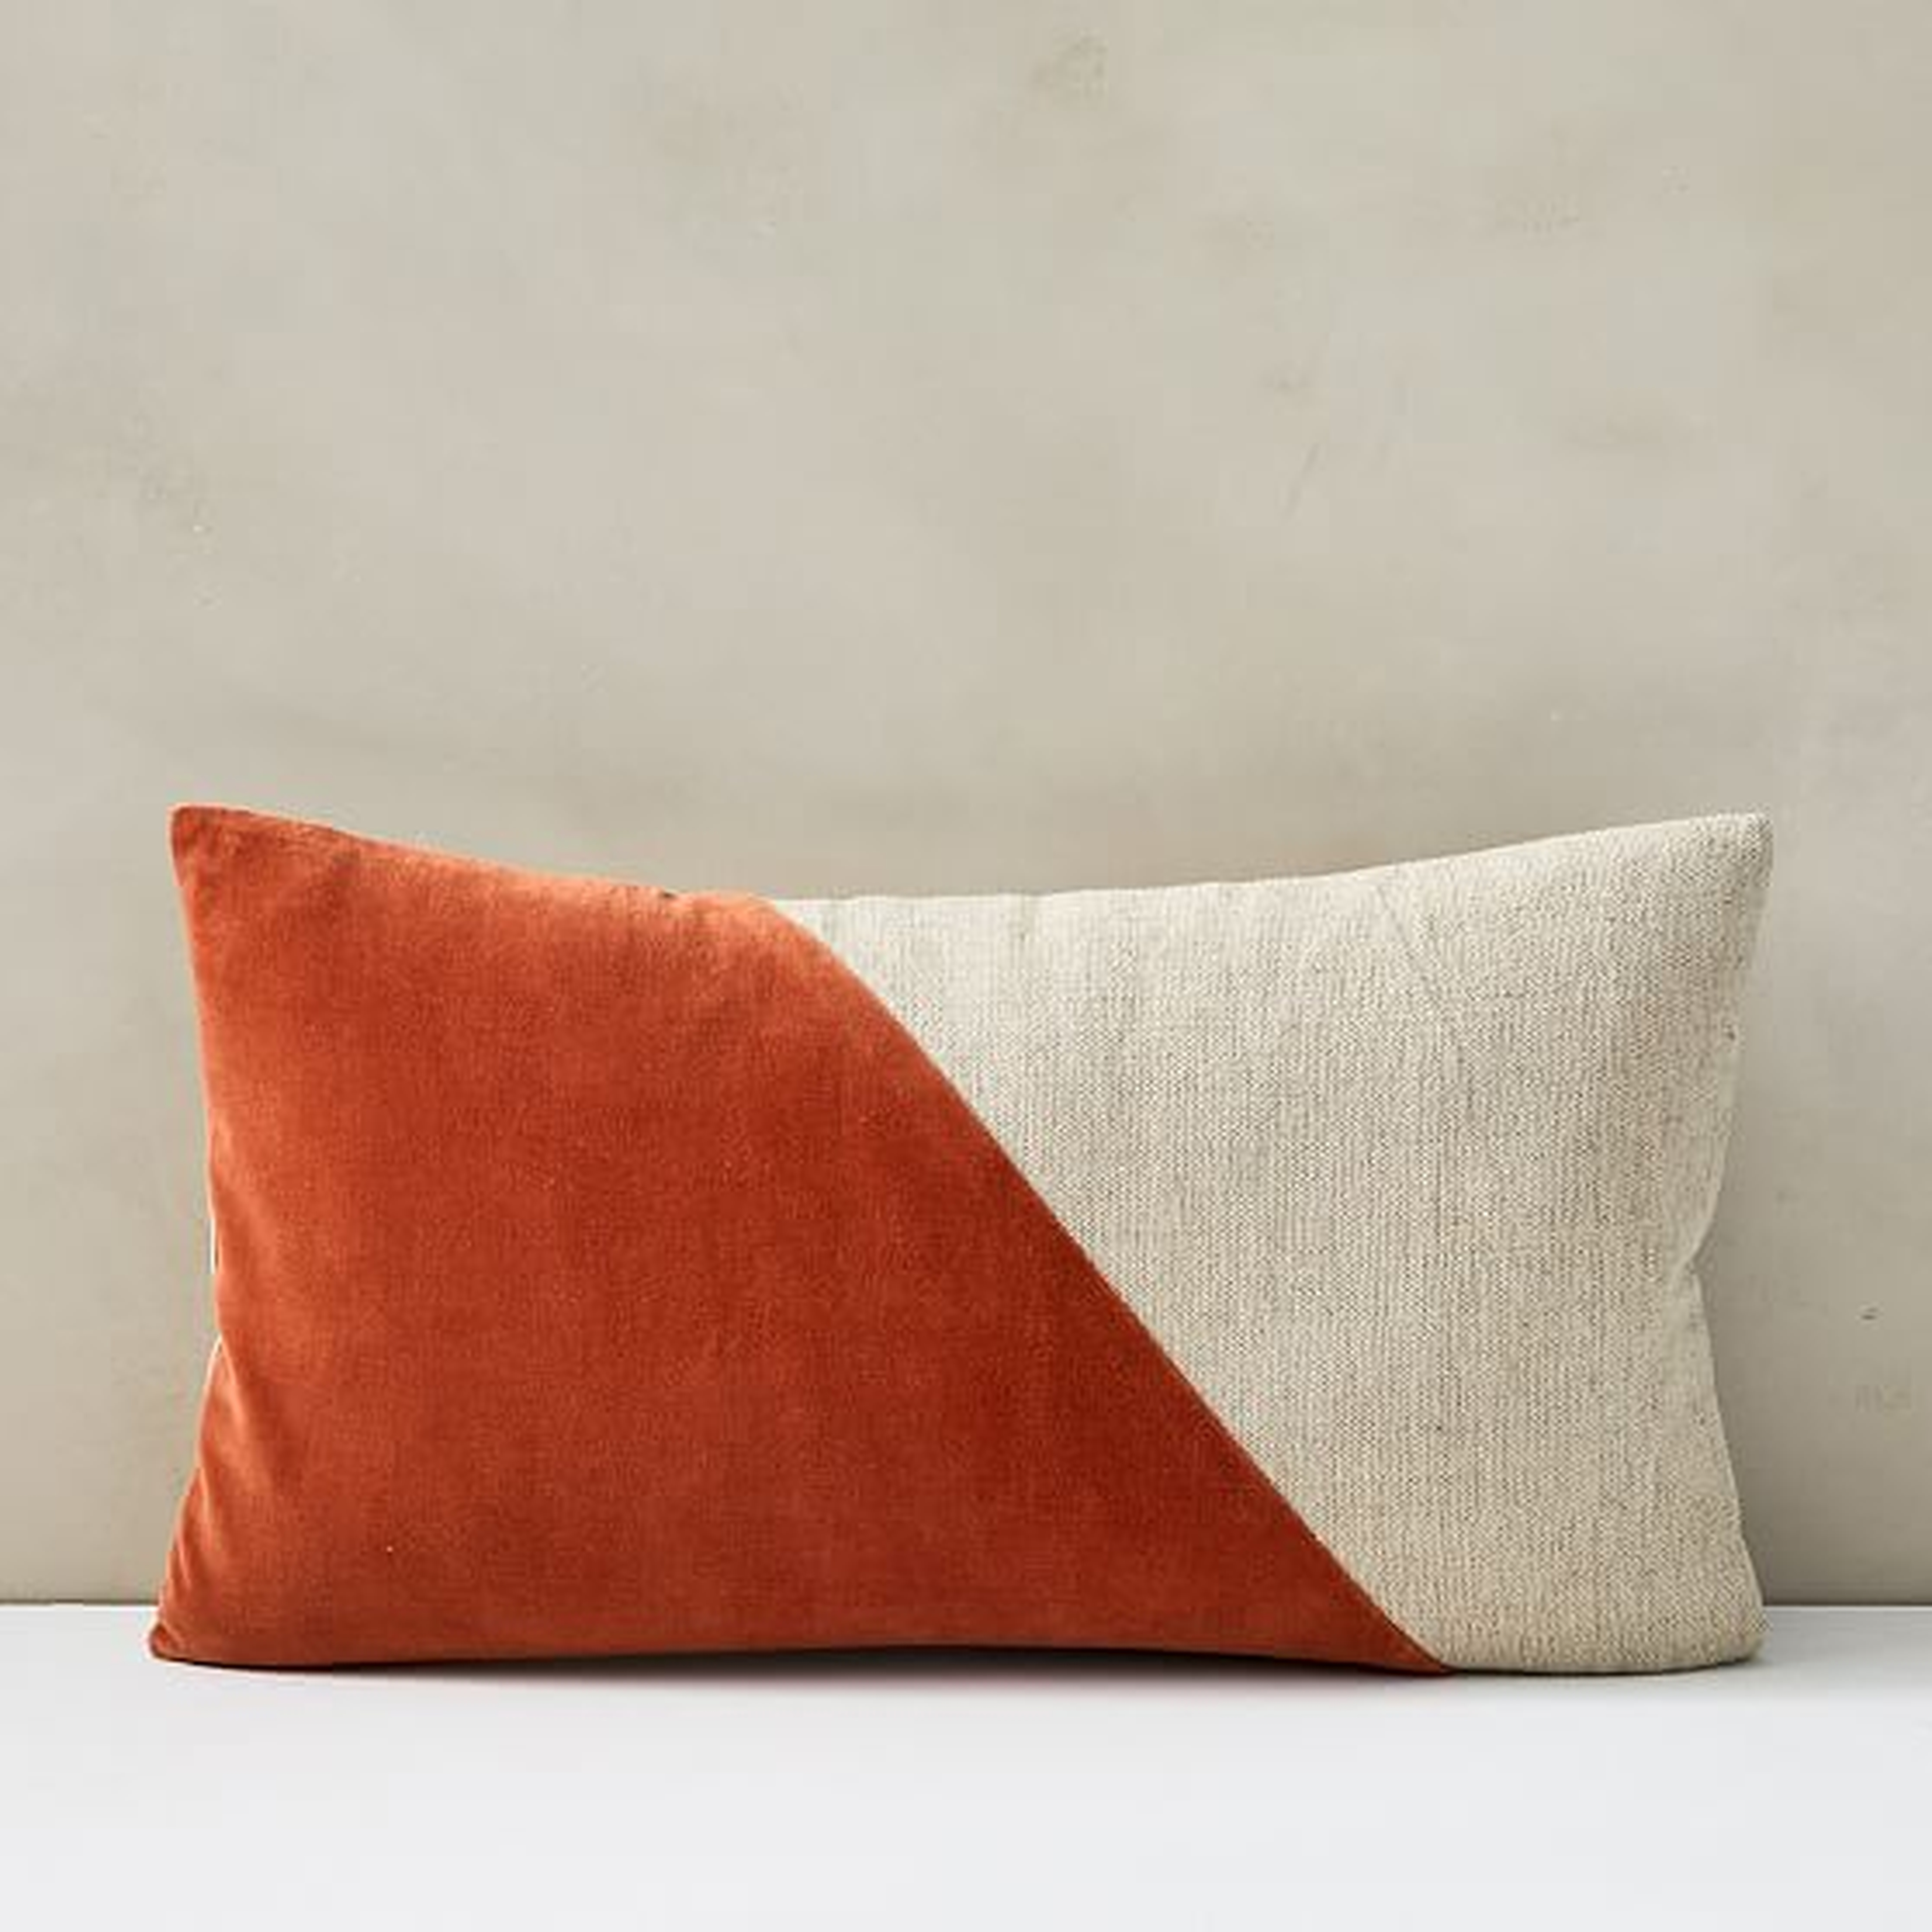 Cotton Linen + Velvet Lumbar Pillow Cover with Down Insert, Copper, 12"x21" - West Elm